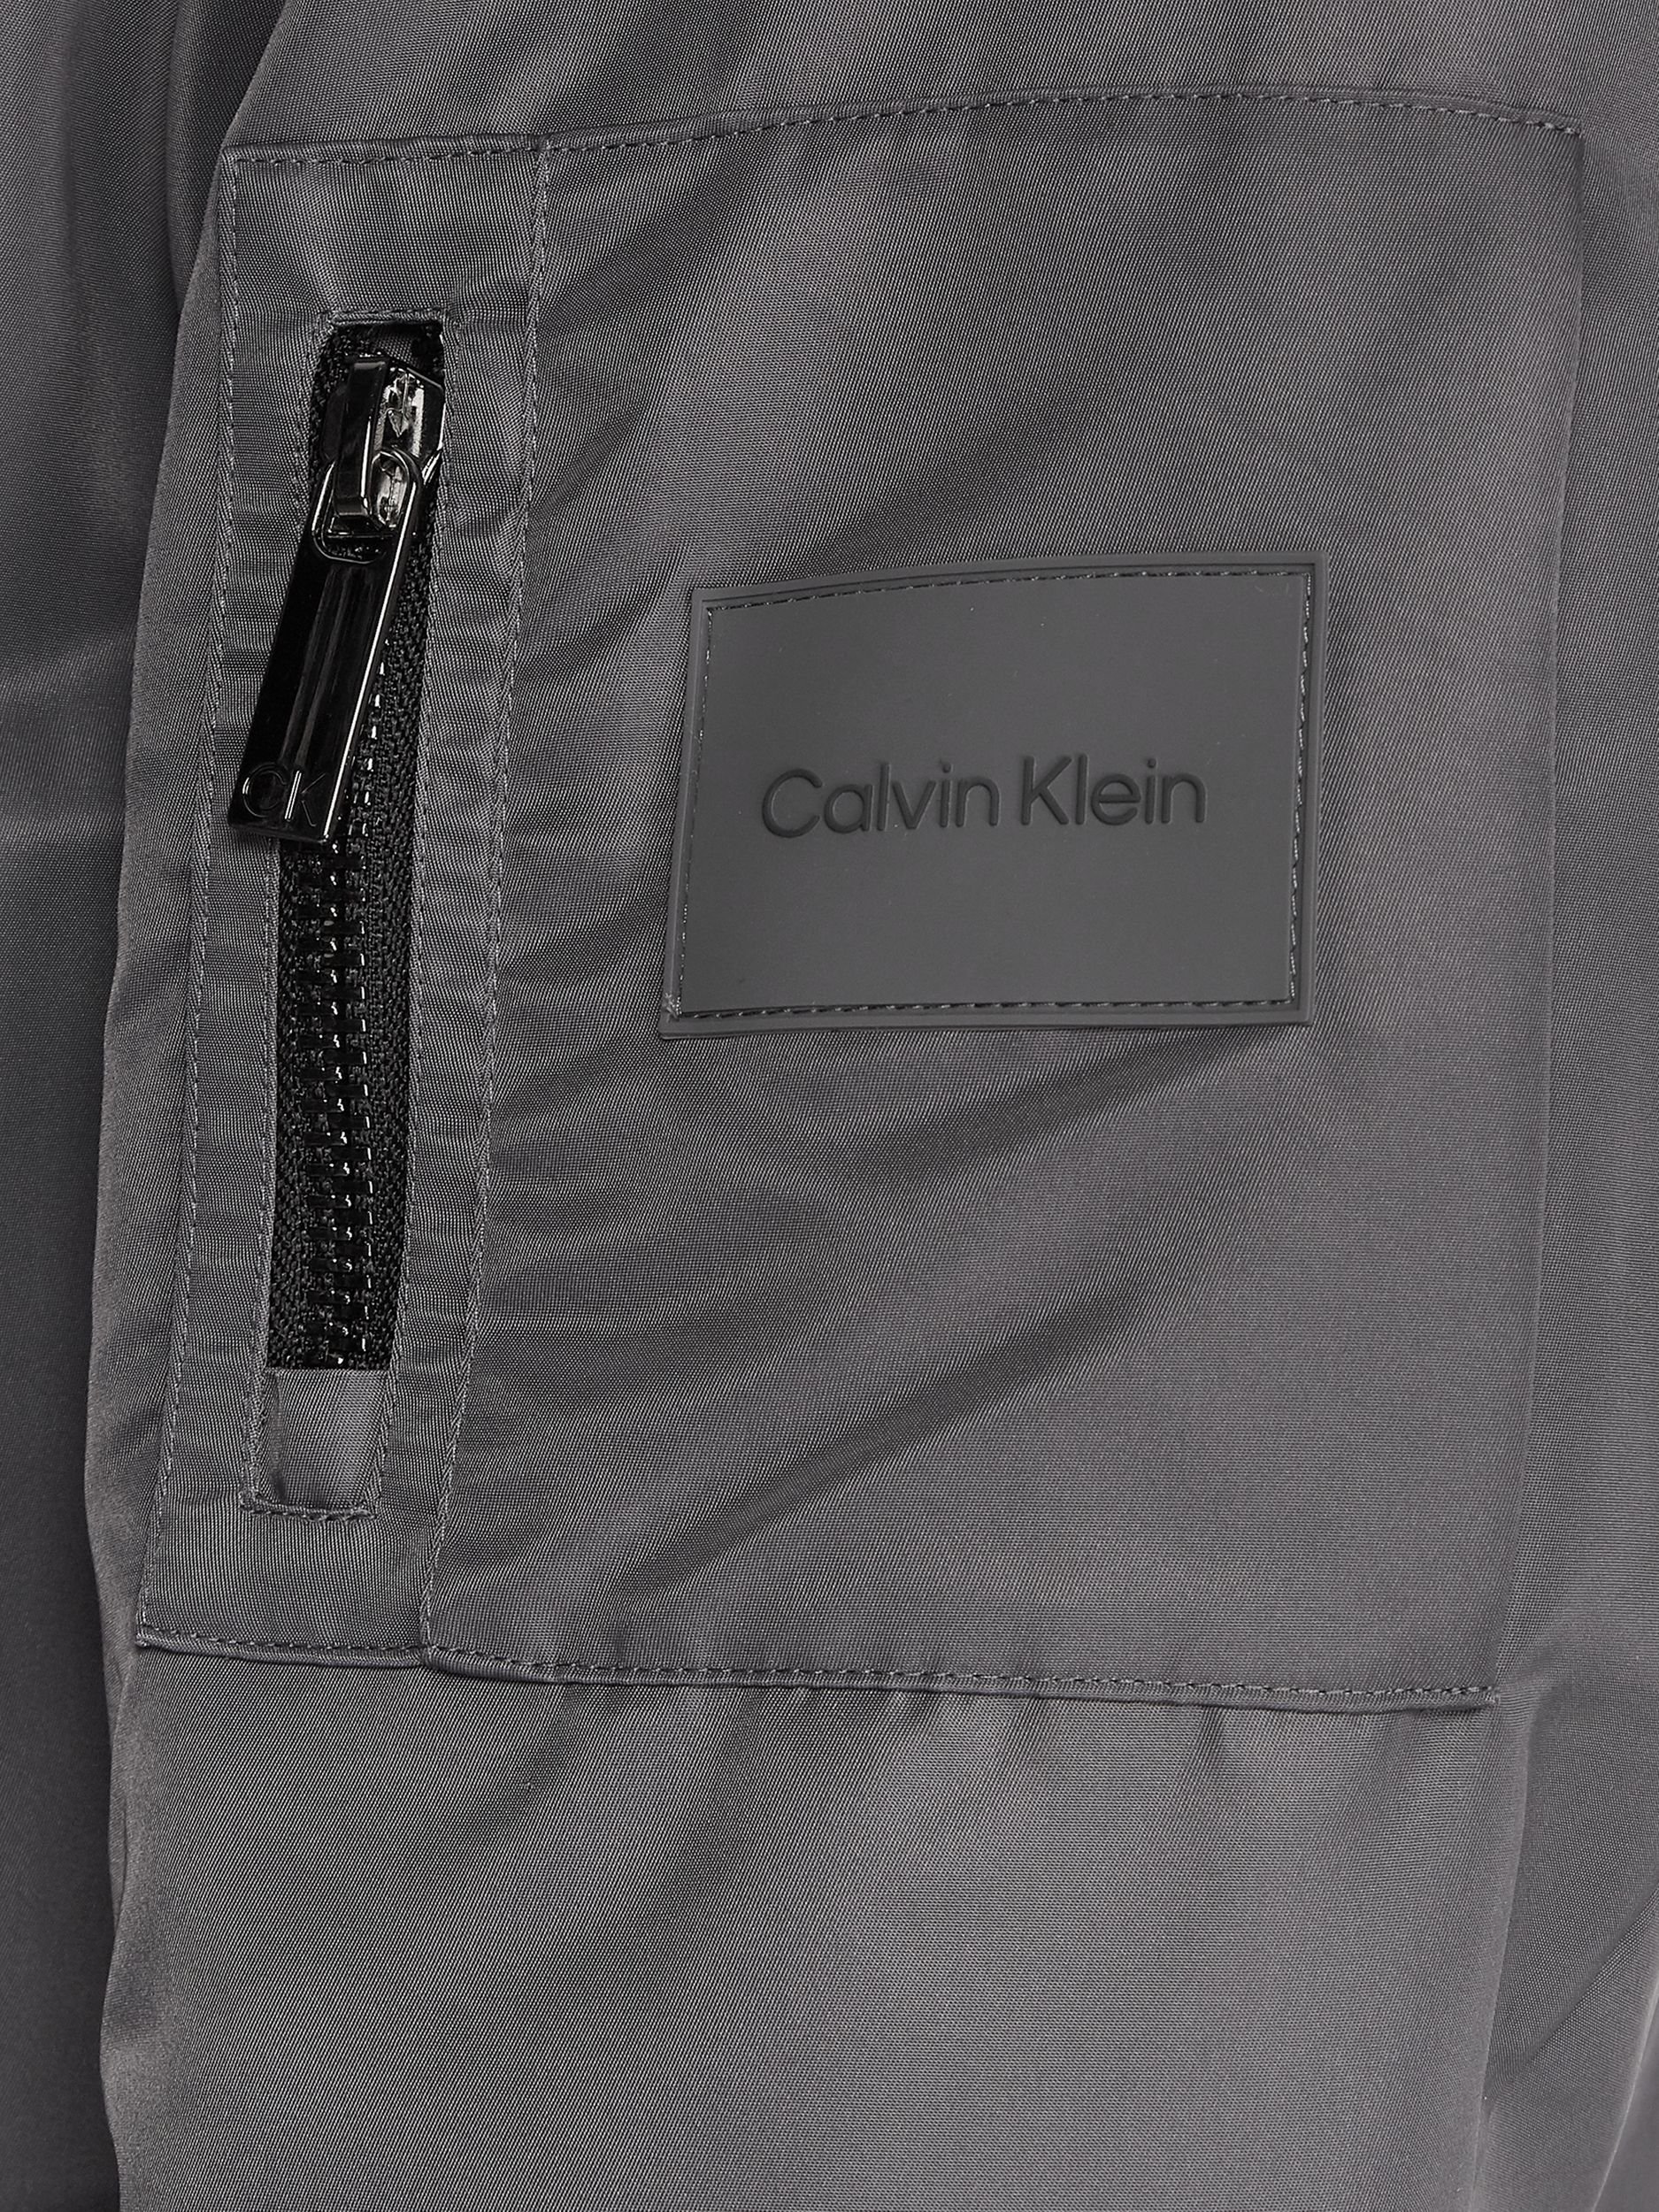 Calvin Klein Menswear (PVH Group) Blouson 